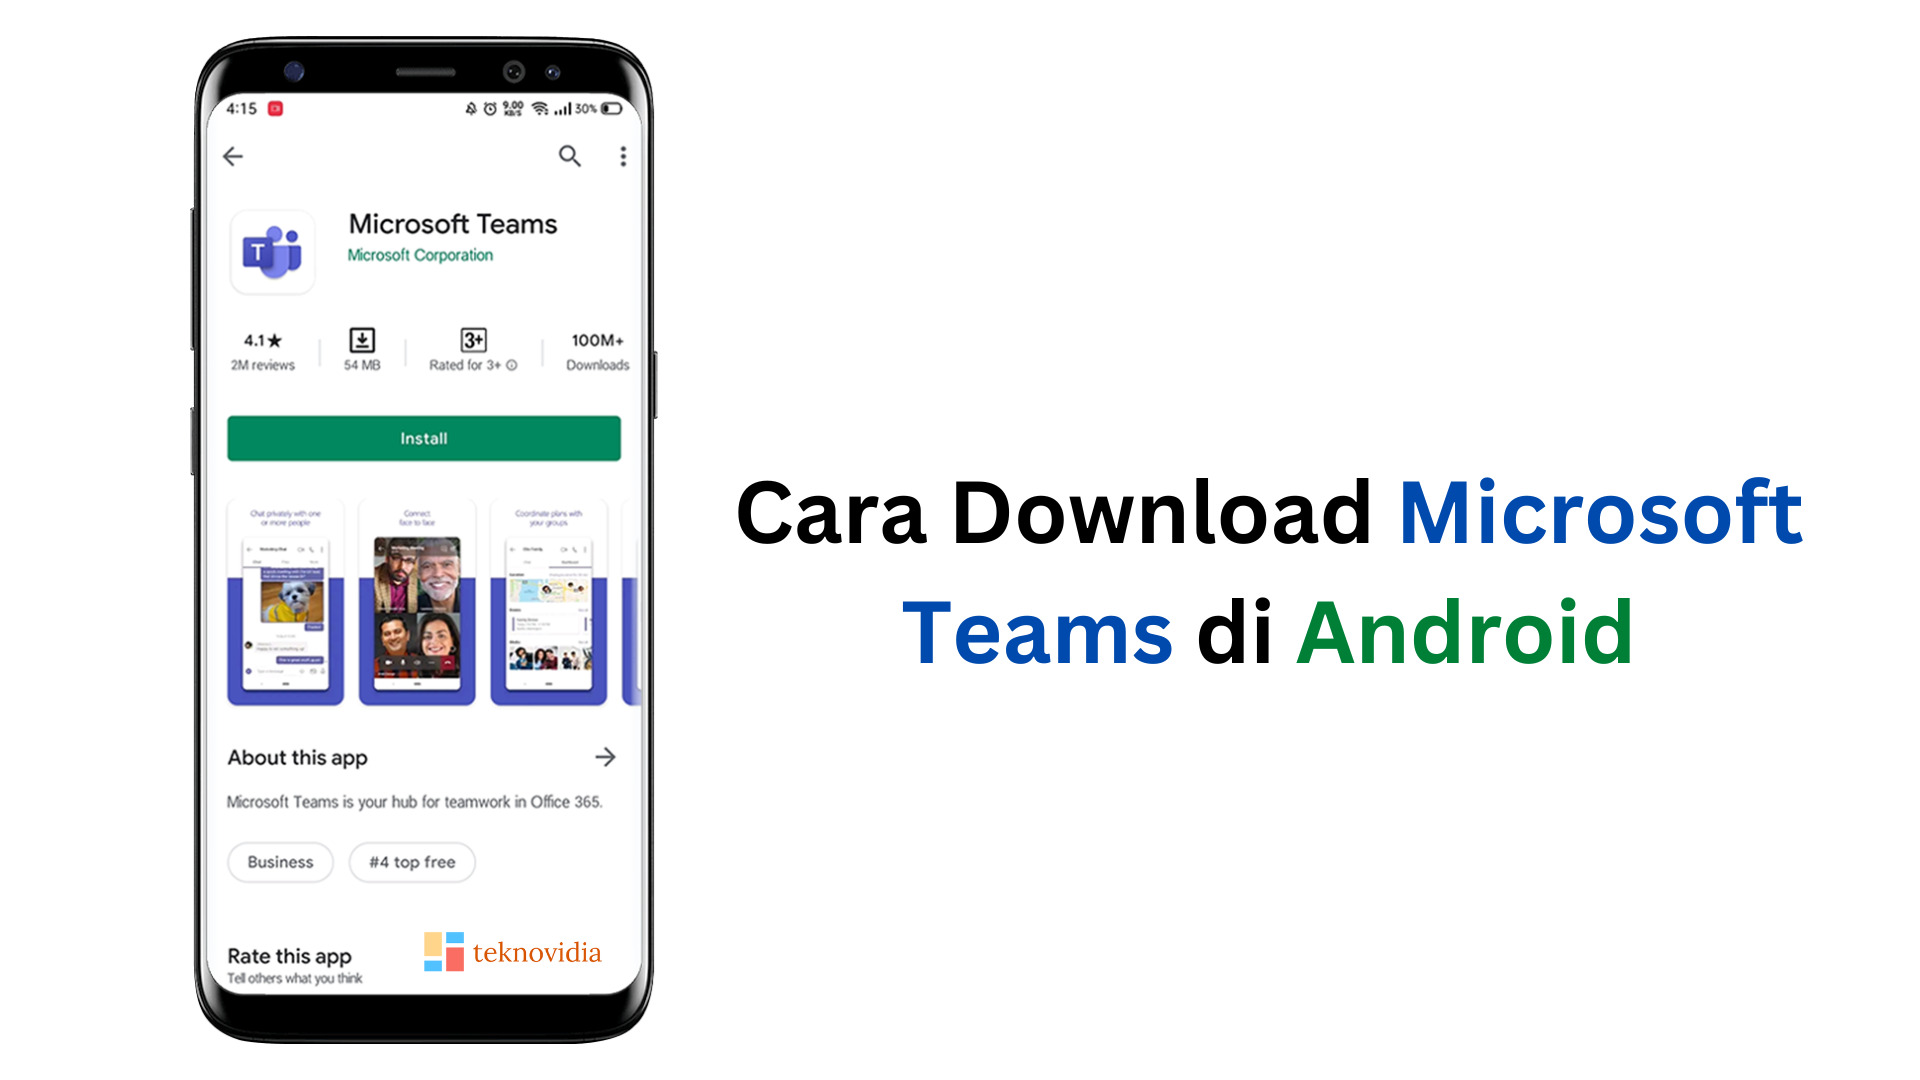 Cara Download Microsoft Teams di Android